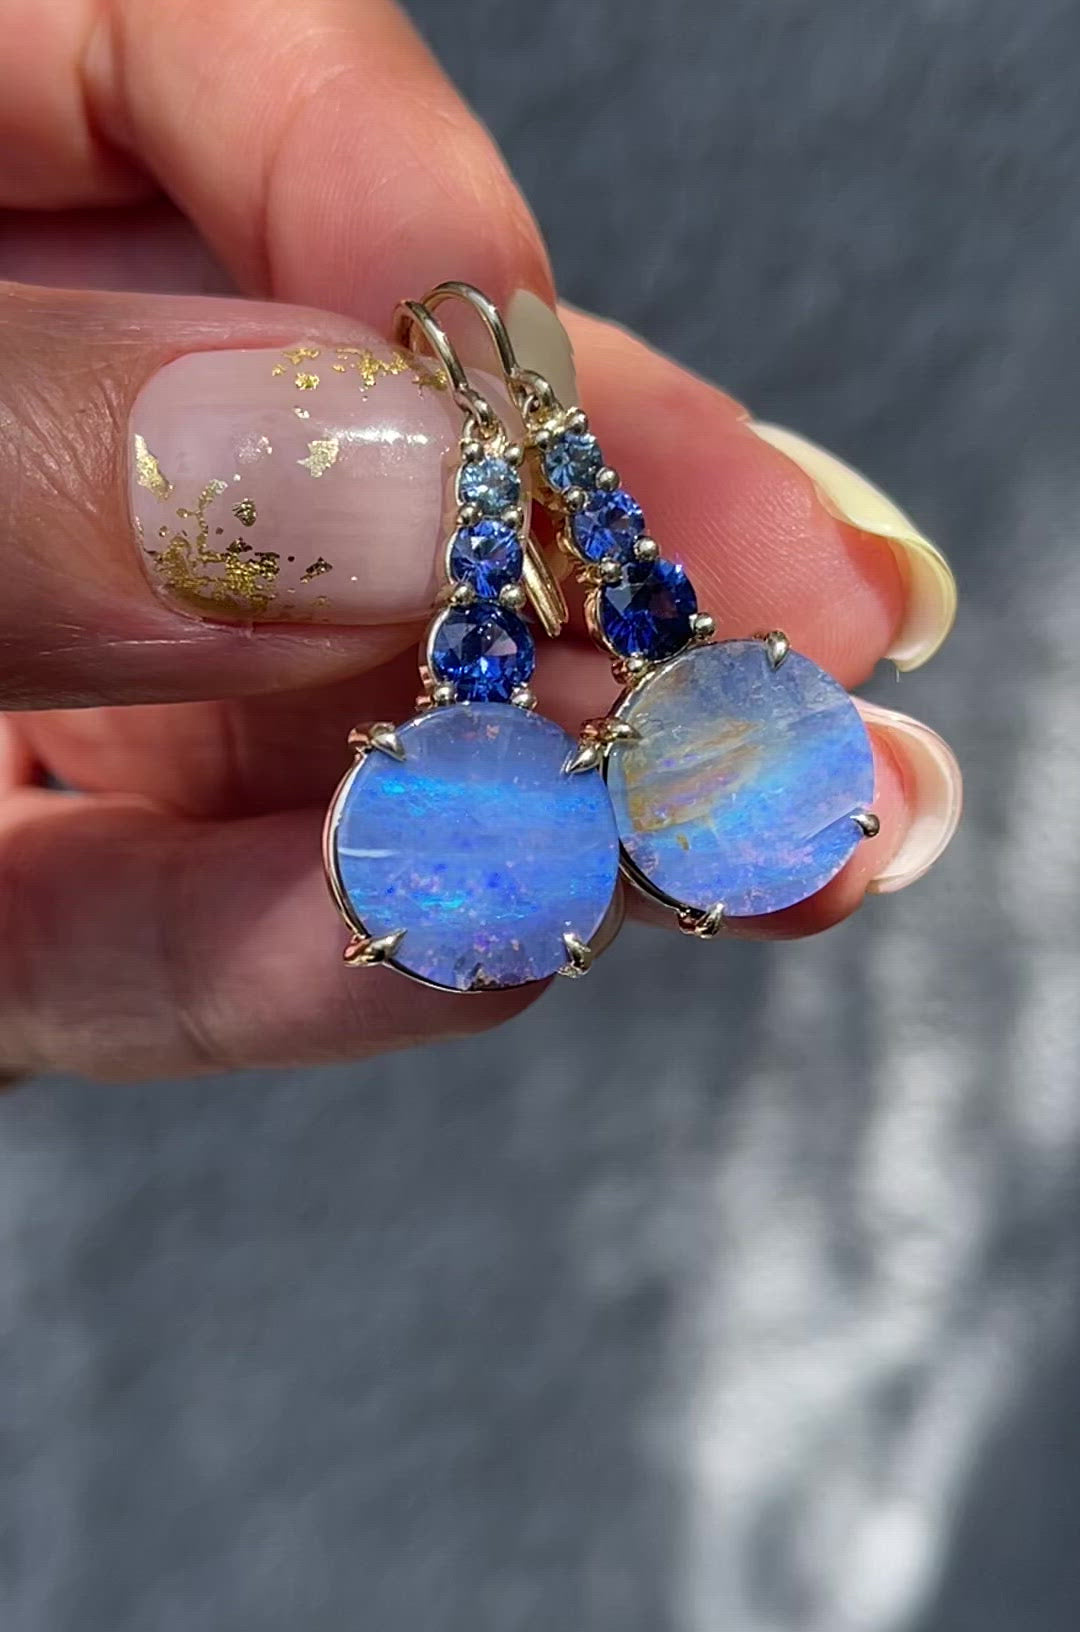  Video of Oceana Australian Opal Earrings by NIXIN Jewelry. Opal dangle earrings with blue sapphire and gold.